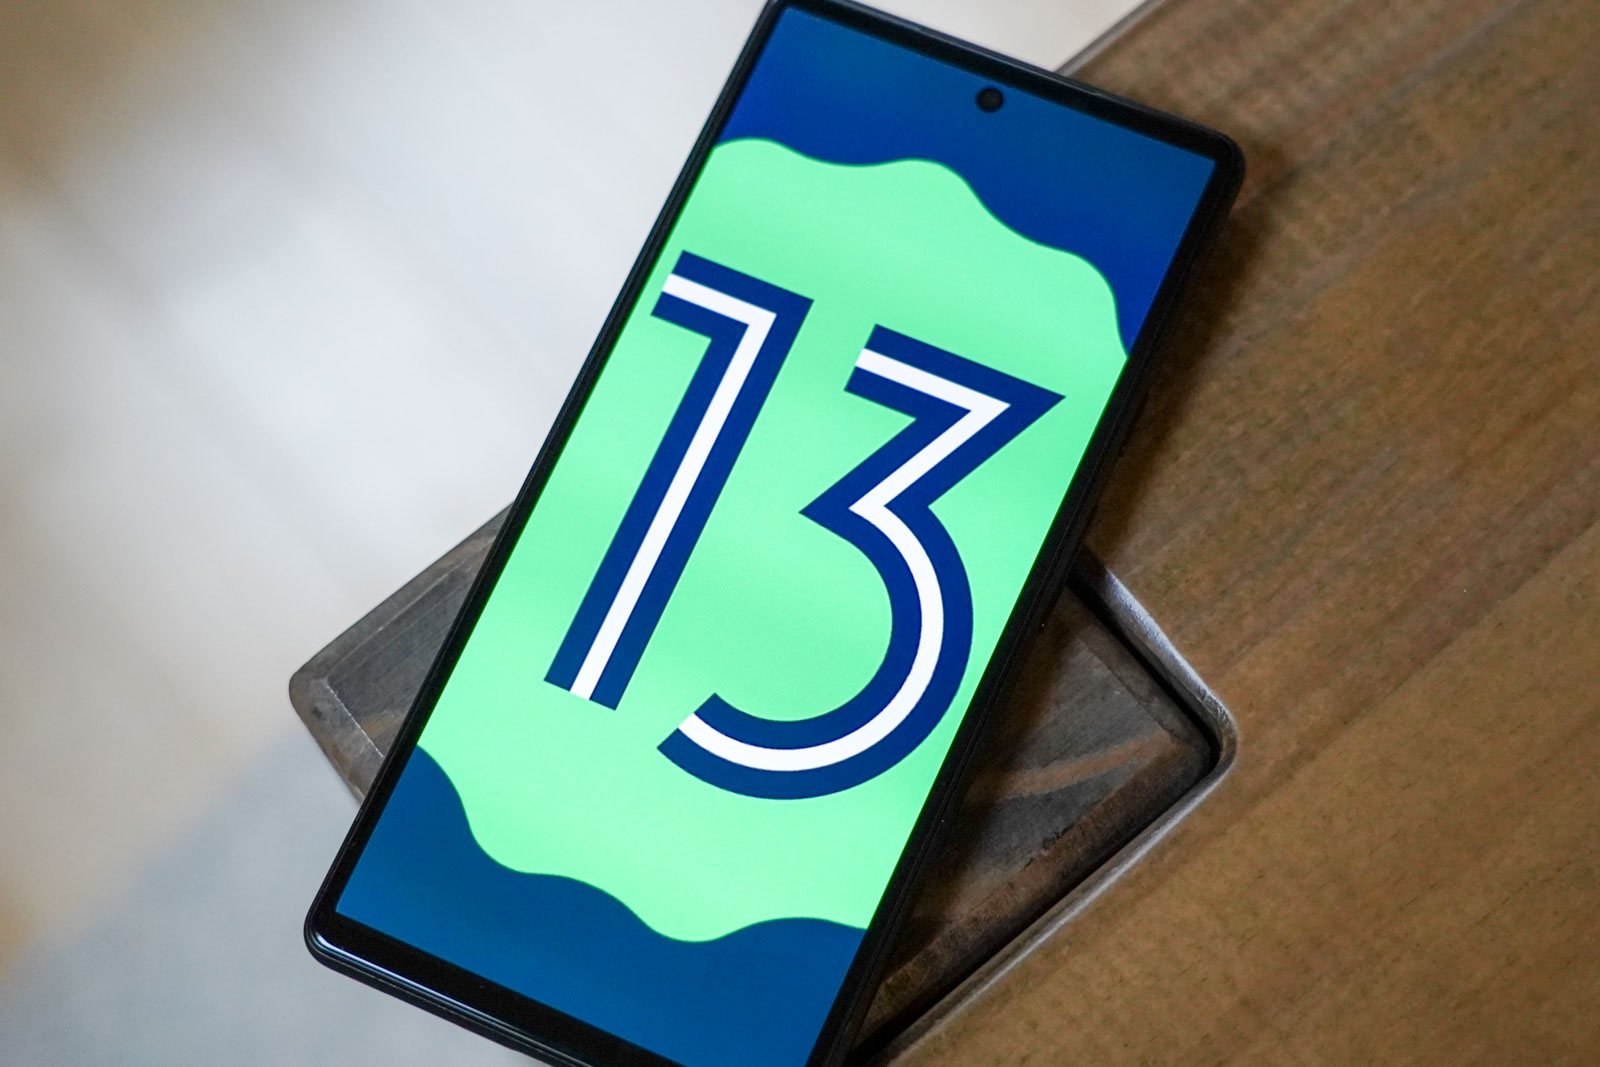 Android 13 est désormais disponible sur plusieurs smartphones et tablettes  Xiaomi, voici la liste